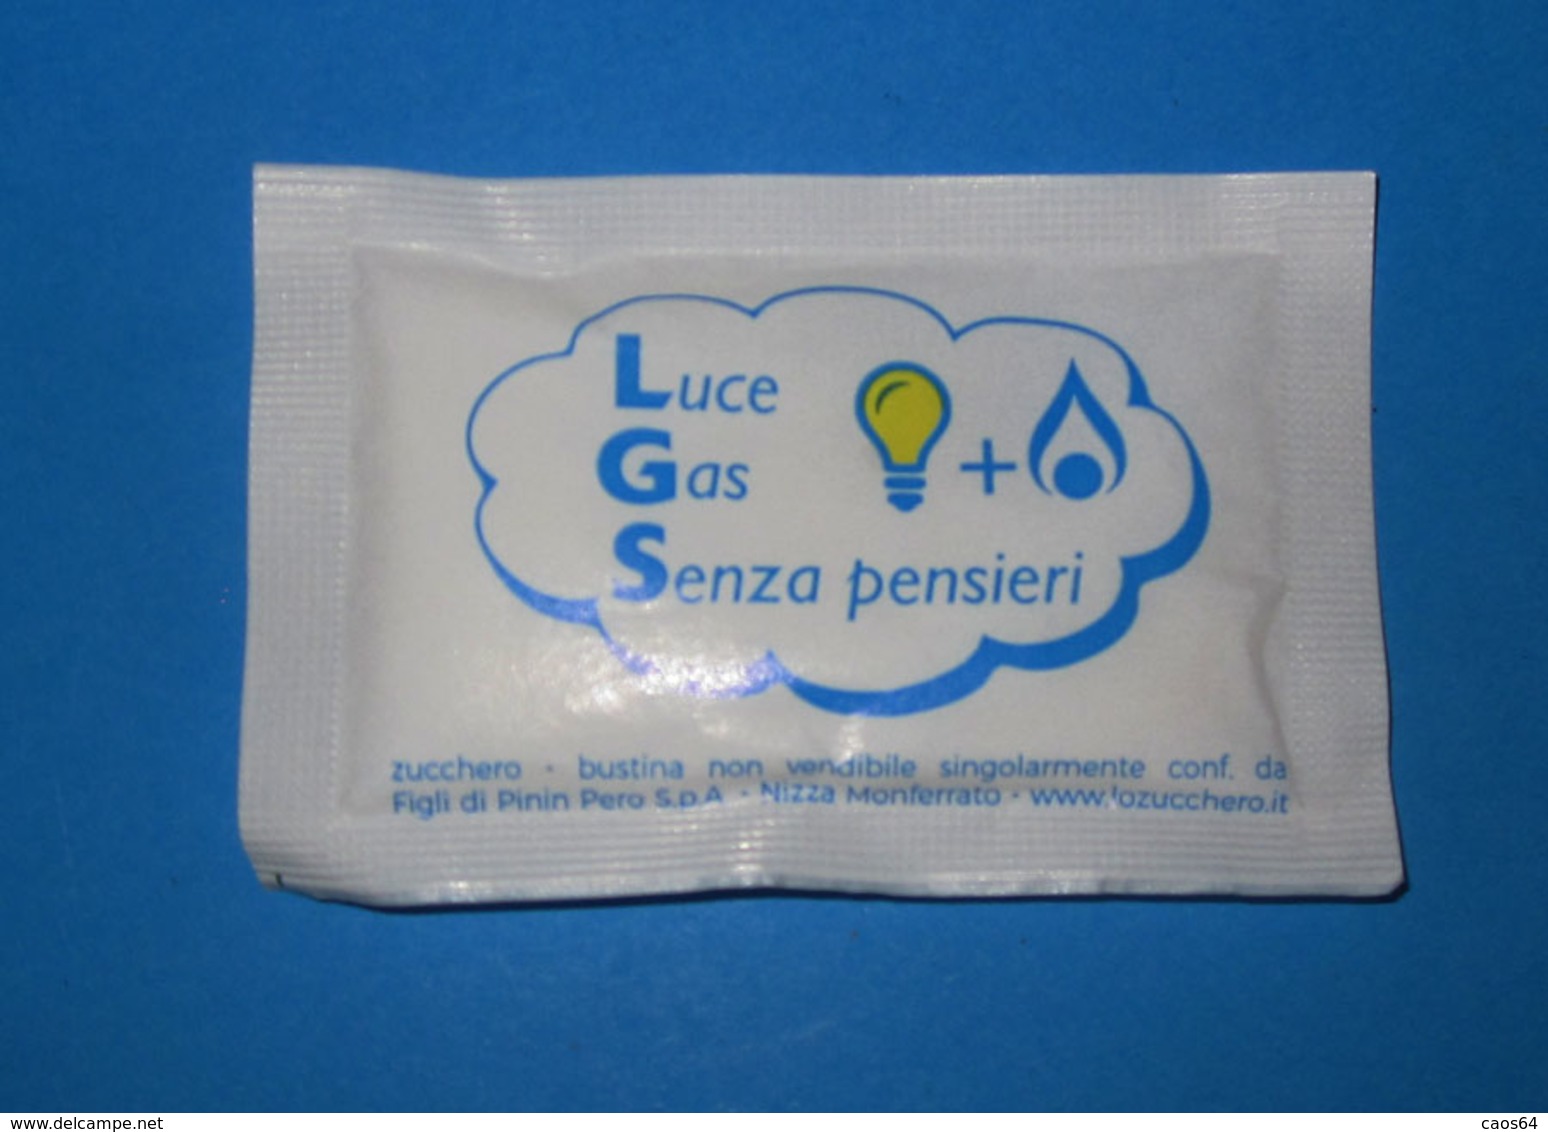 LIGURIA GAS SERVICE Acqui Terme (AL)  BUSTINA DI ZUCCHERO  PIENA - Zucchero (bustine)